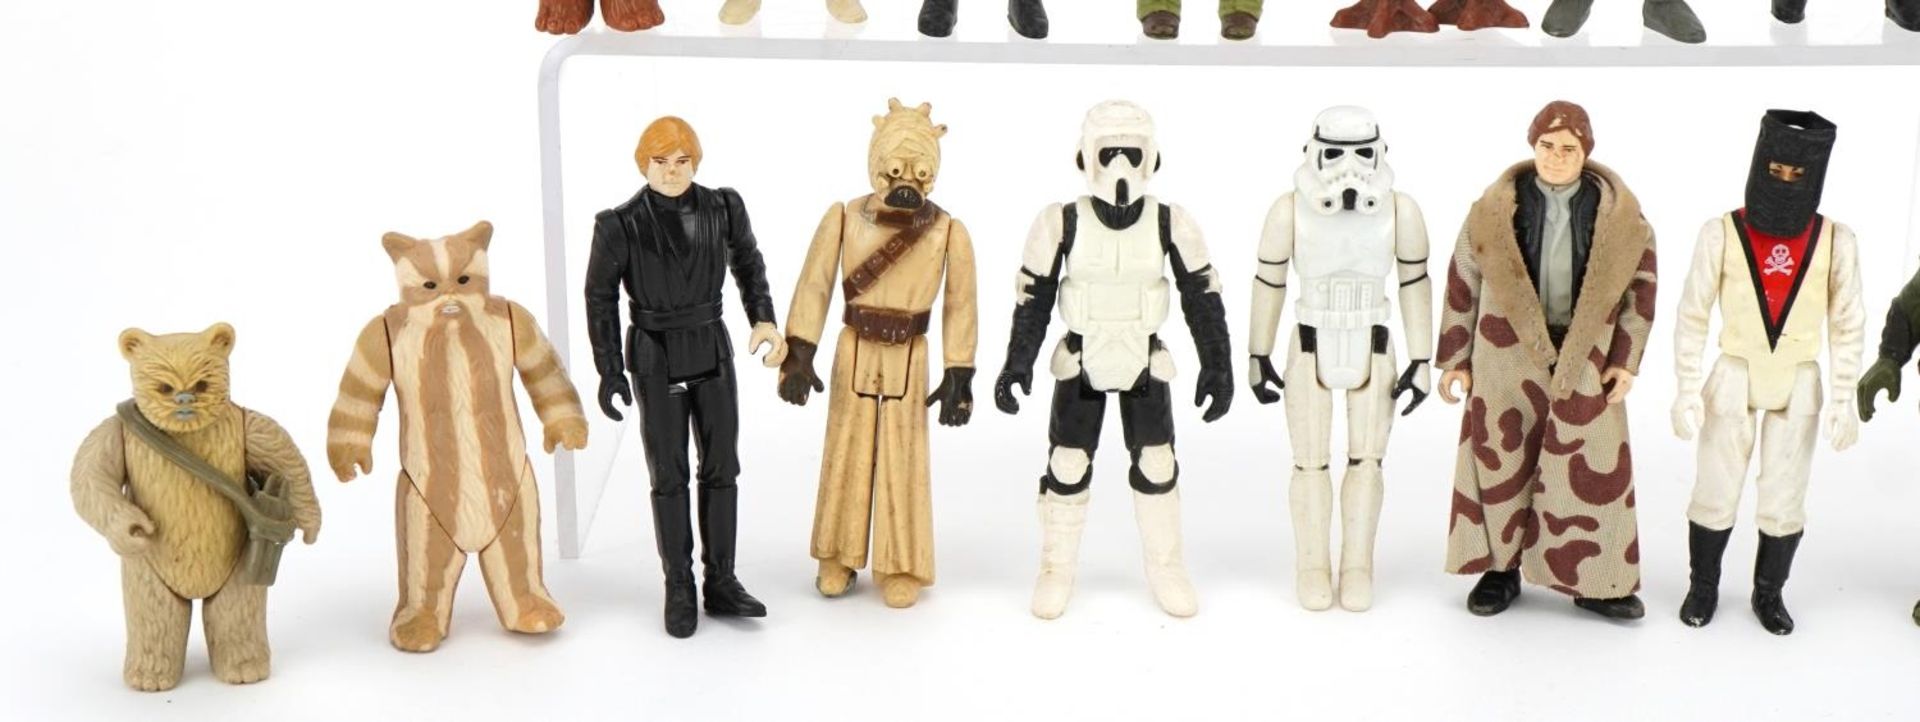 Twenty vintage Star Wars action figures including Stormtrooper and Luke Skywalker - Image 3 of 4